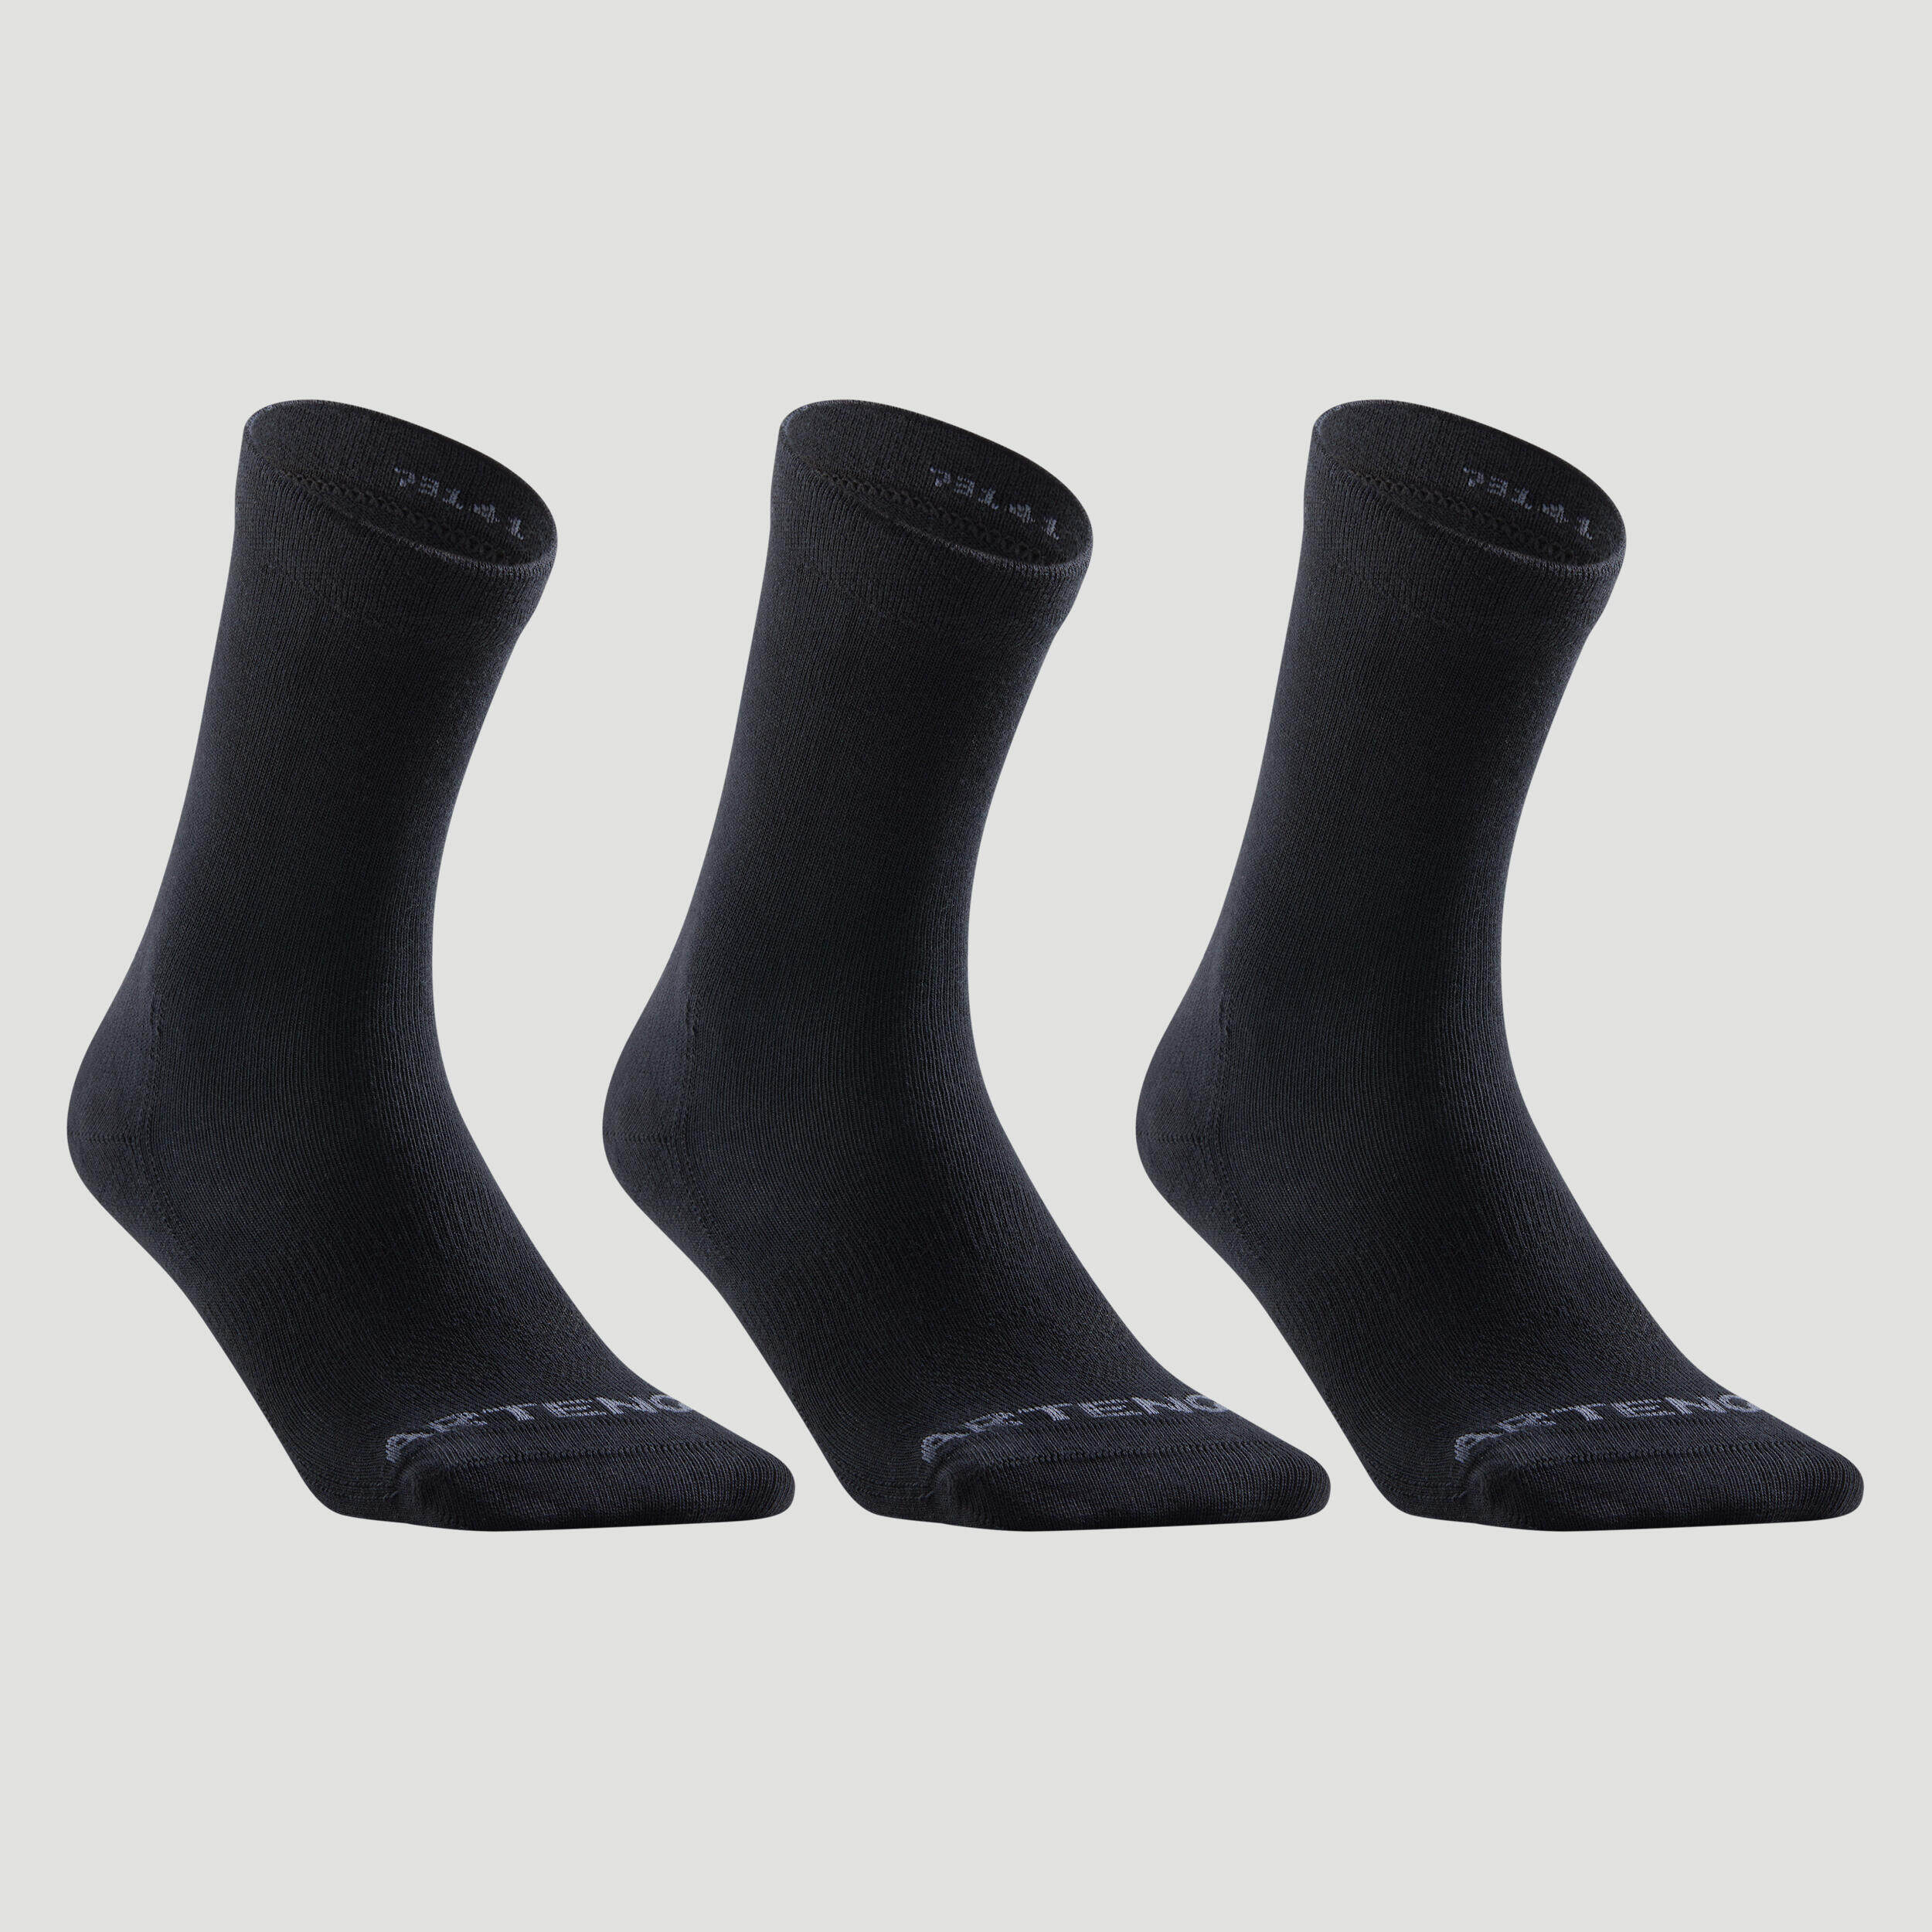 Football Grip Socks Viralto MiD - Black